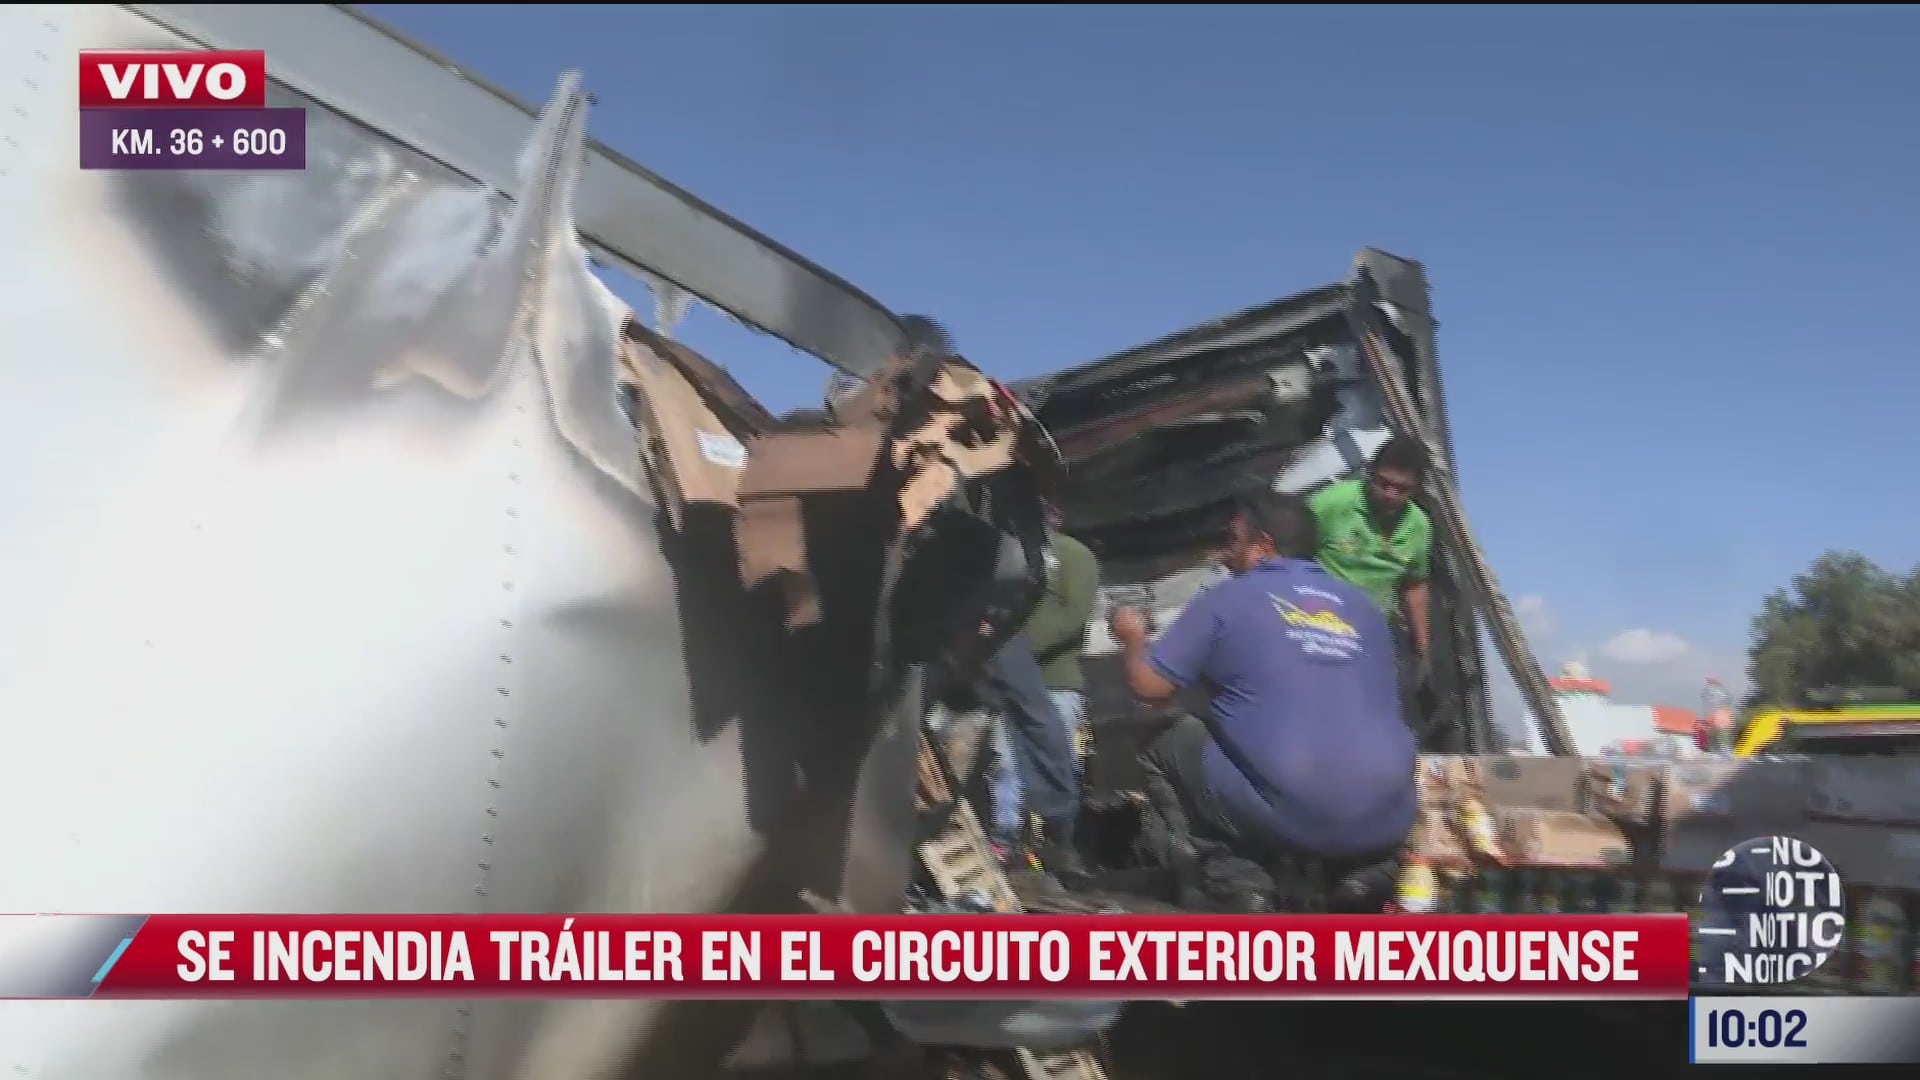 se incendia trailer con 12 toneladas de abarrotes en circuito exterior mexiquense